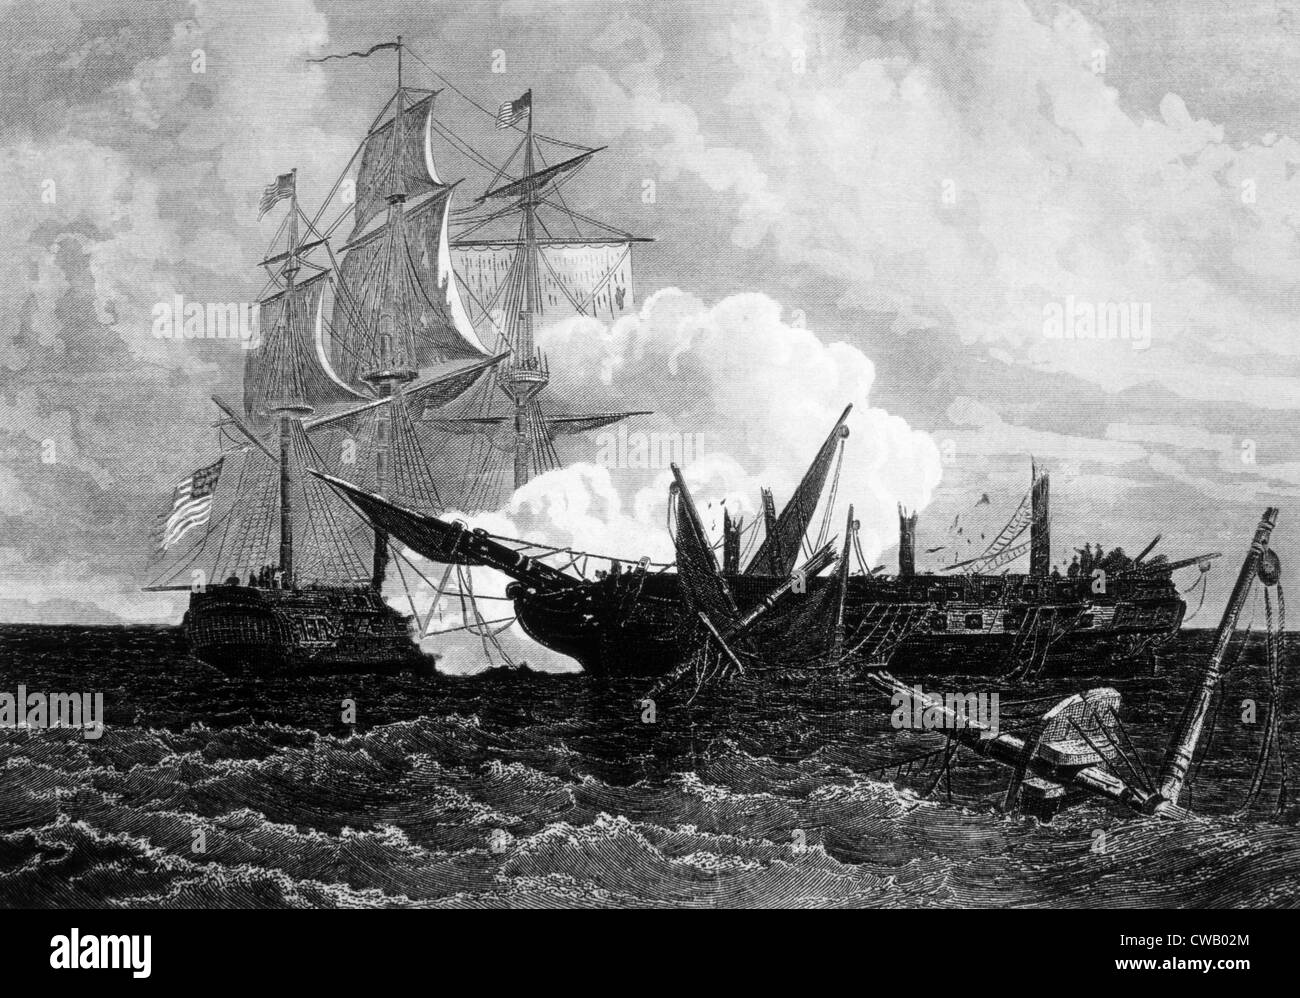 La guerra de 1812, batalla naval en la que fragata norteamericana Constitución anula el buque de guerra británico Guerriere, 19 de agosto de 1812 Foto de stock